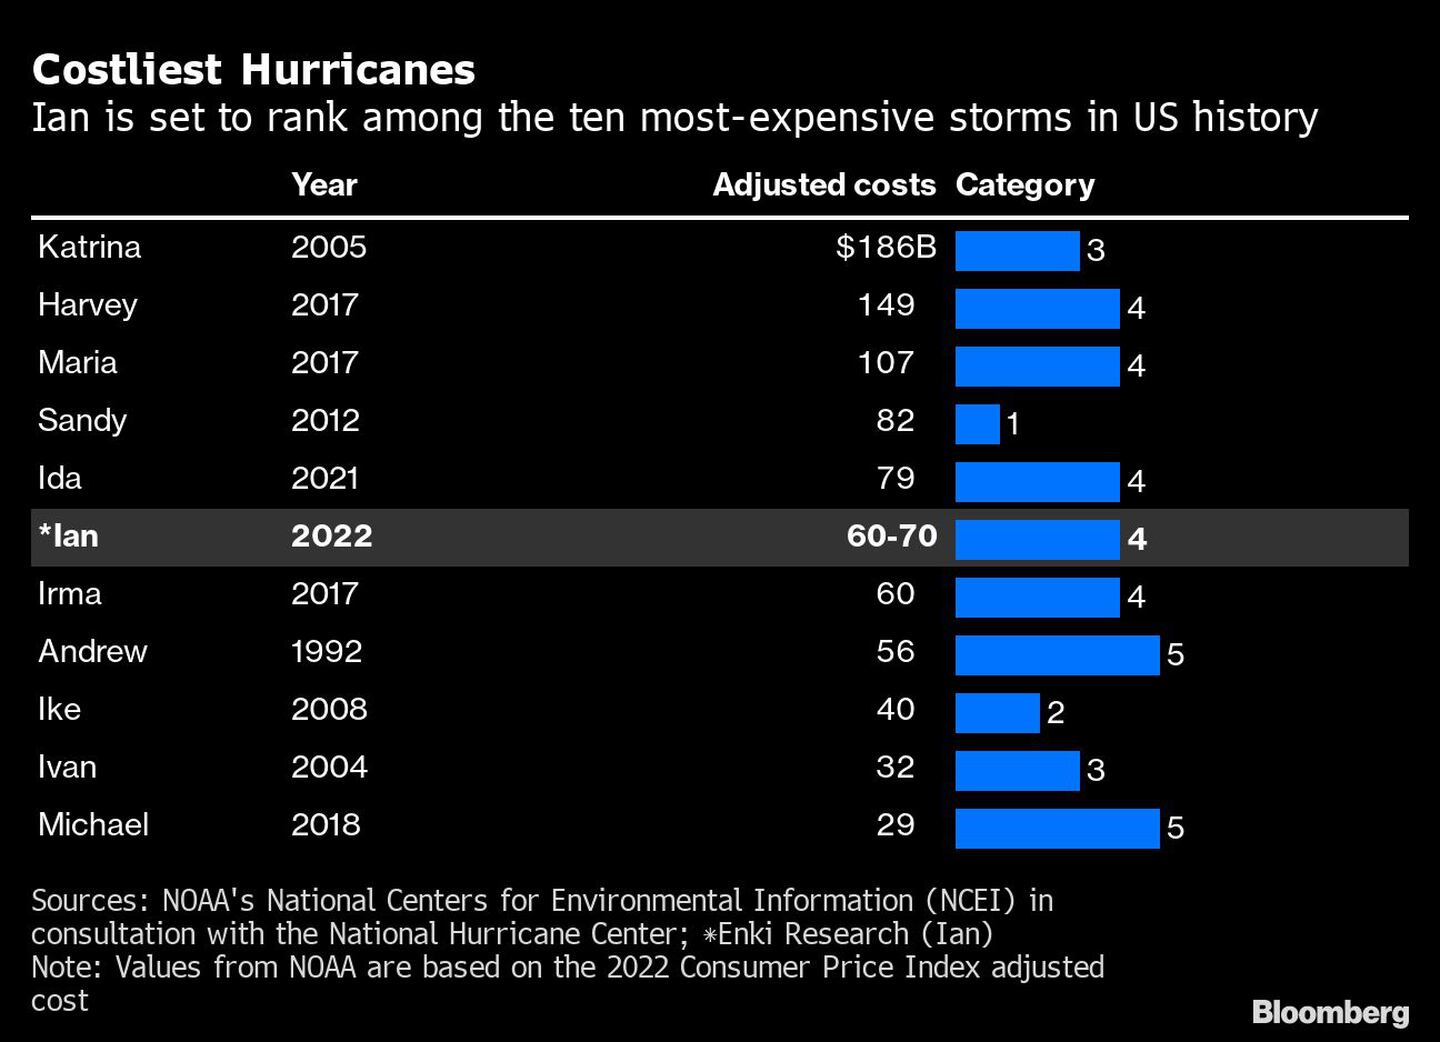 Ian ya se ubicó como una de las tormentas más costosas en la historia de EEUUdfd